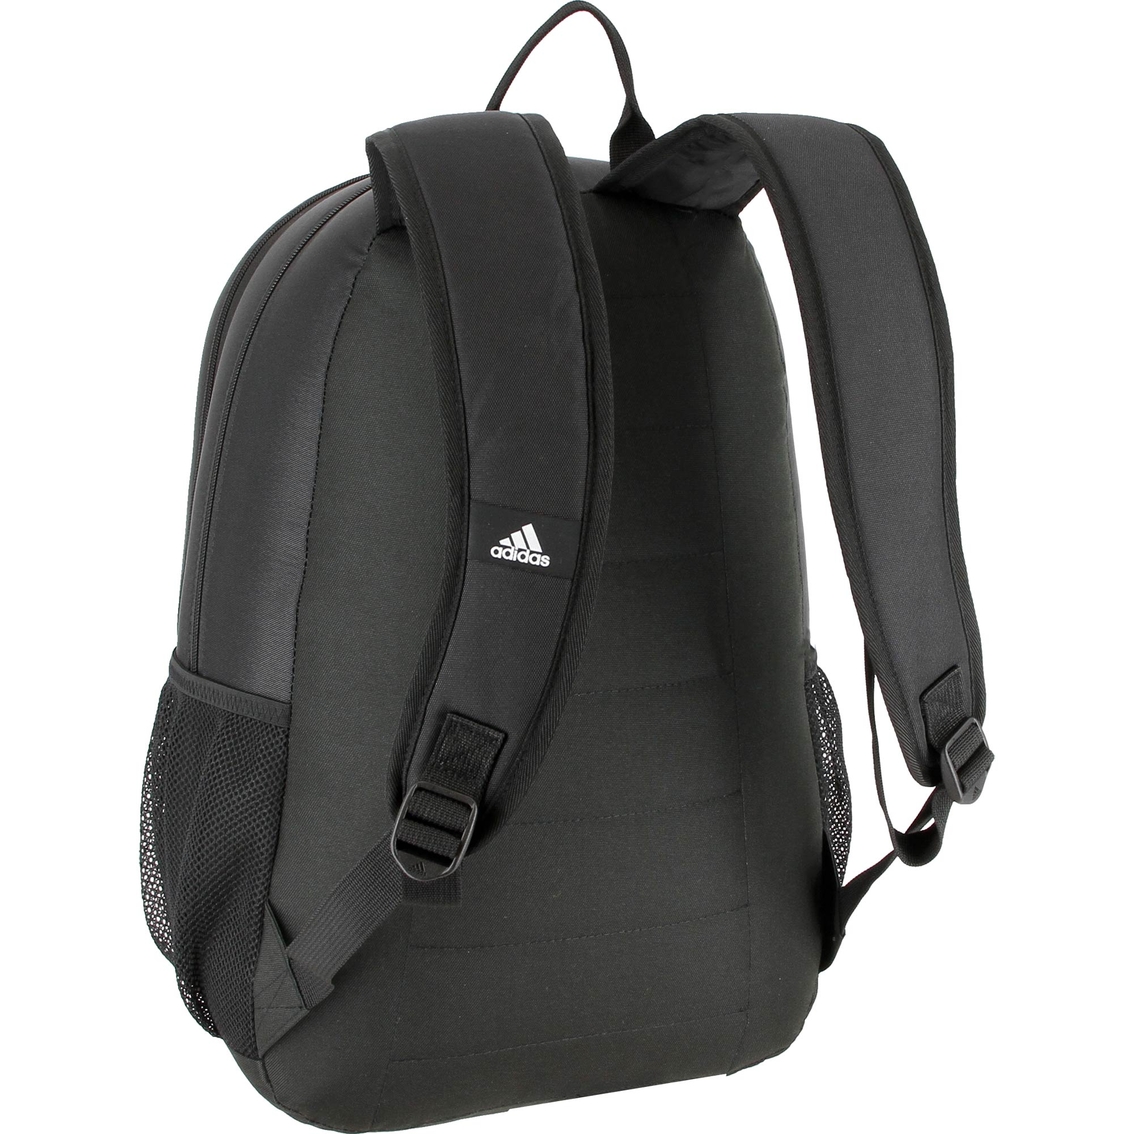 adidas Striker II Team Backpack - Image 3 of 4